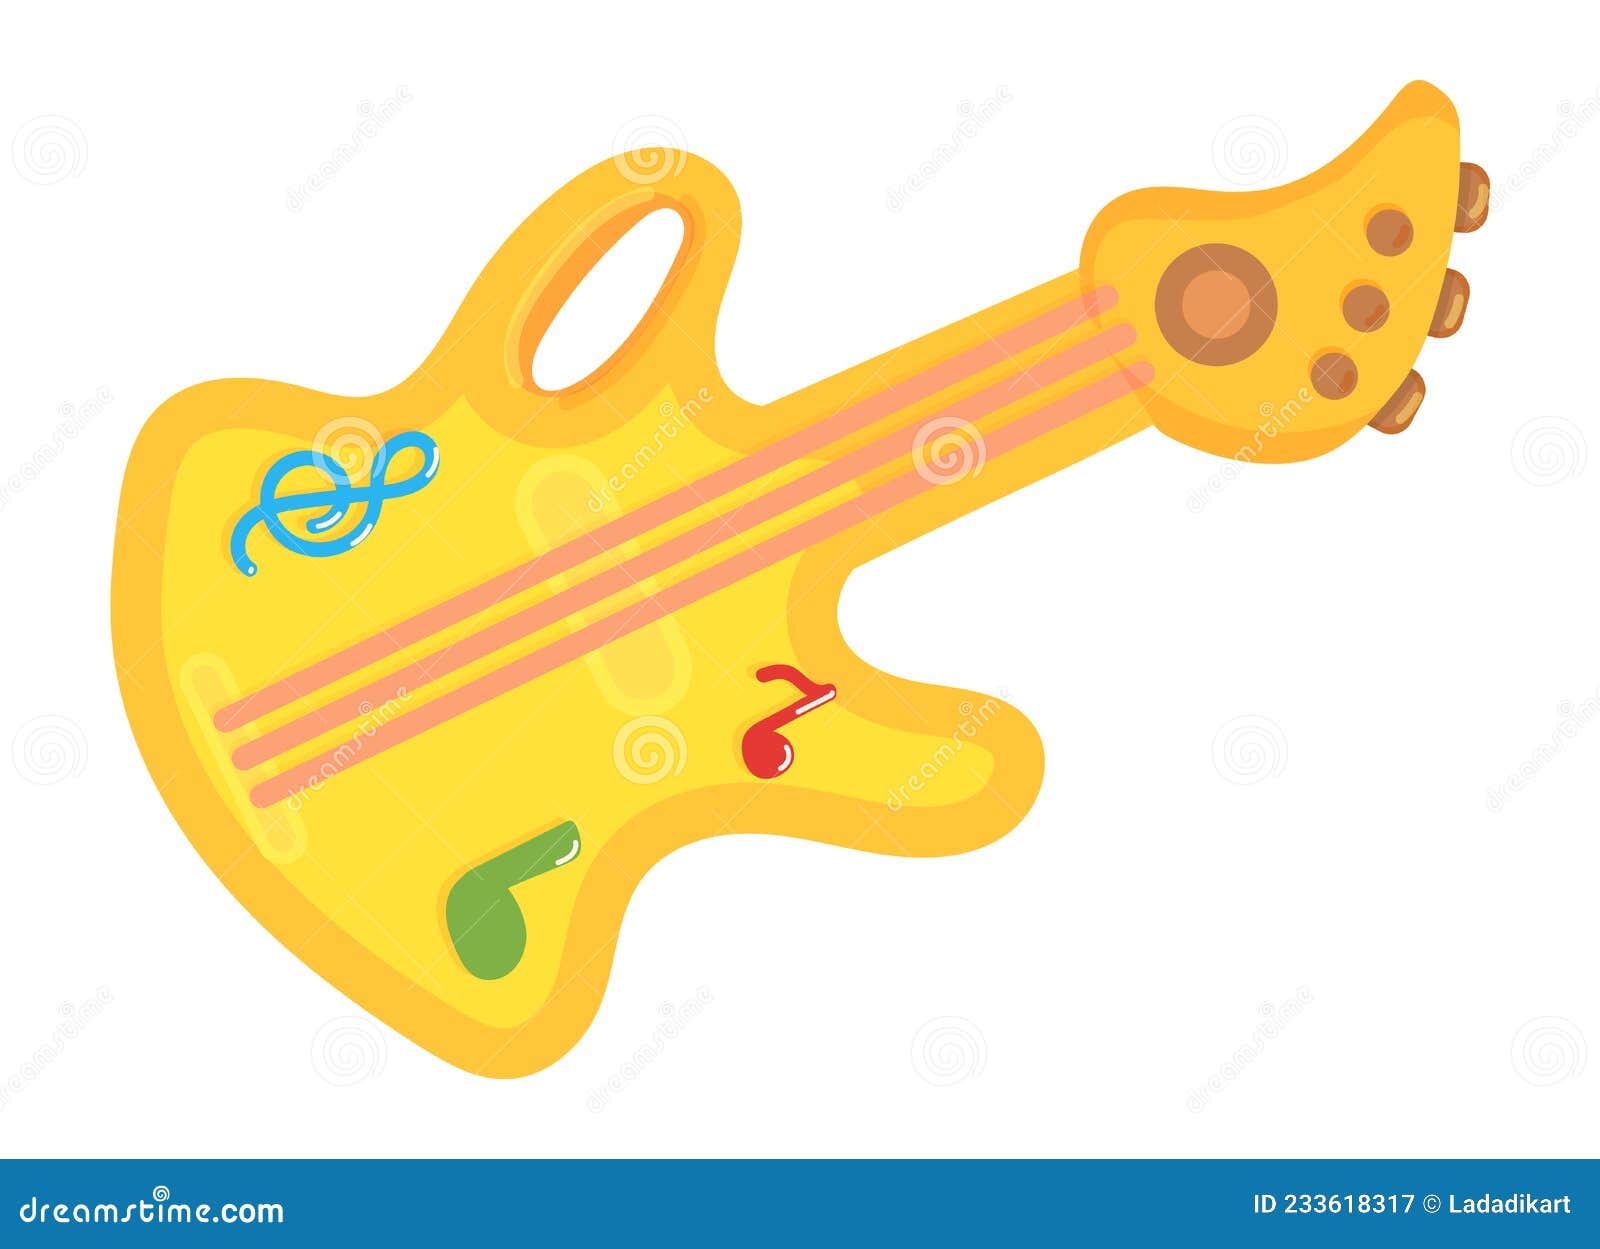 Guitarra De Juguete. Instrumento De Música Eléctrica De Dibujos Animados  Amarillos Ilustración del Vector - Ilustración de feliz, acorde: 233618317